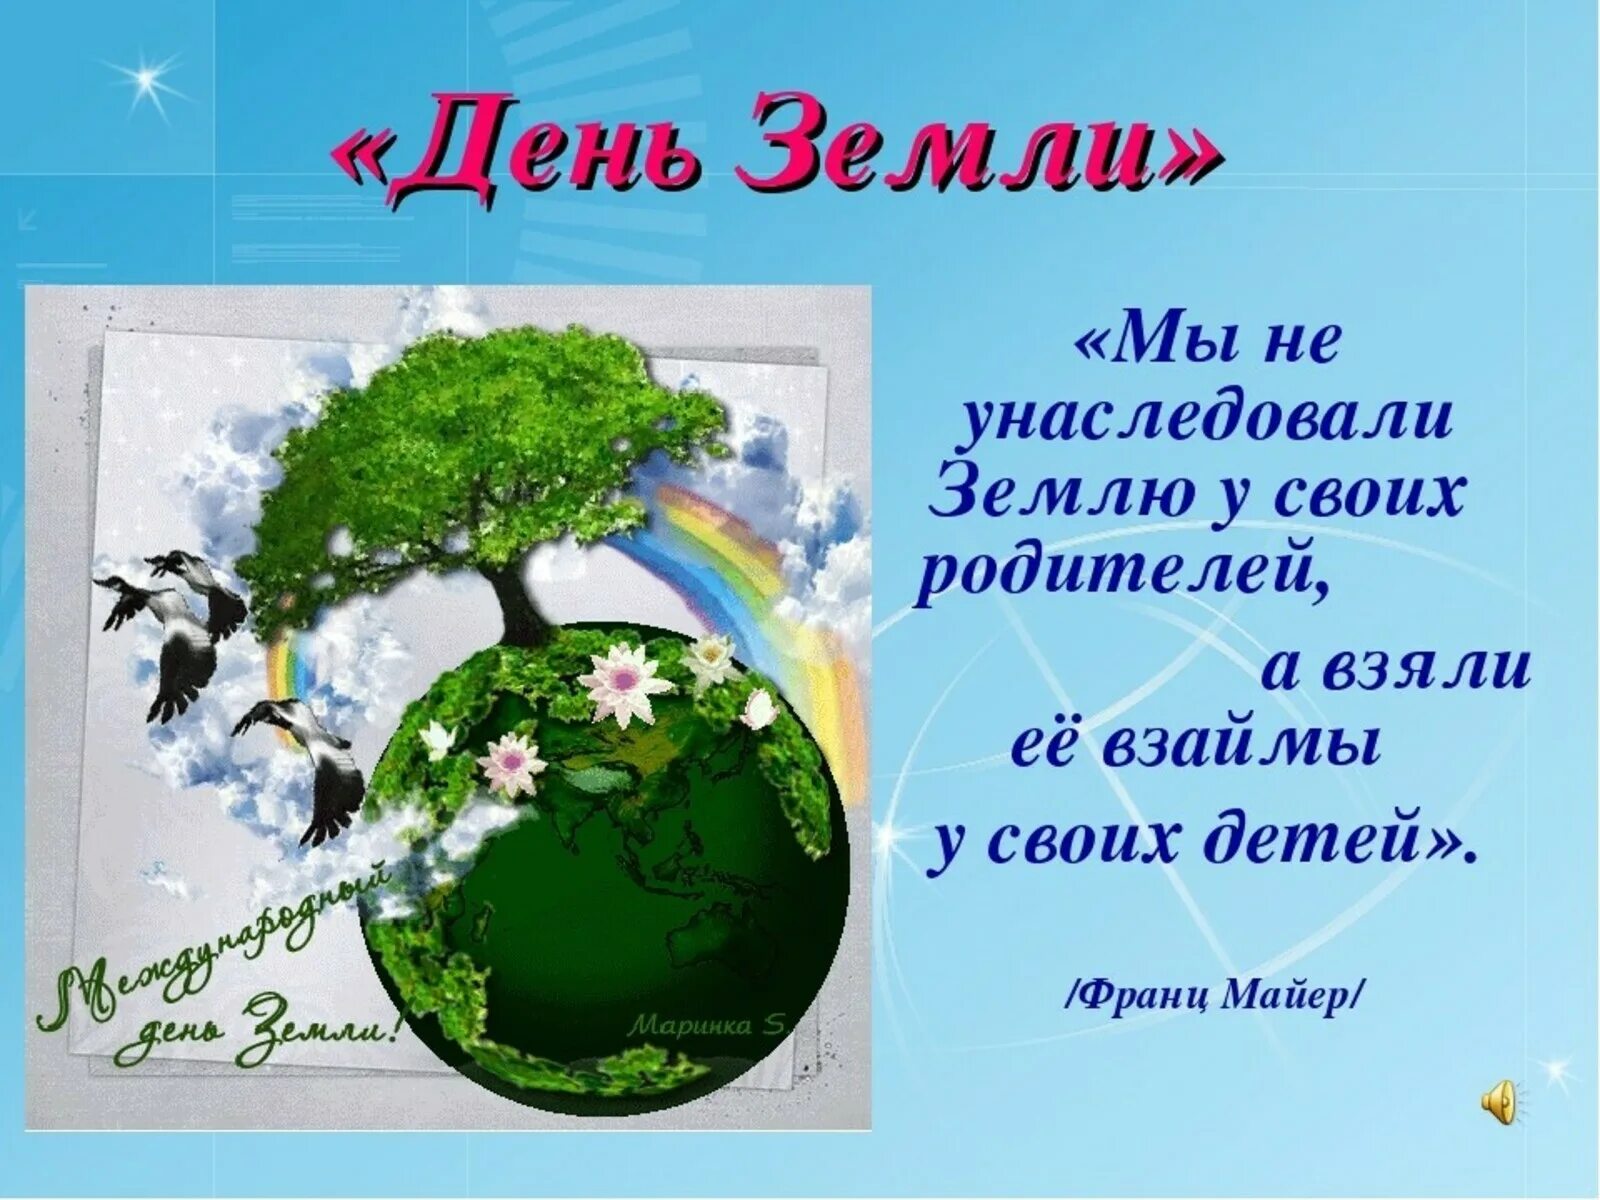 Международный день земли классный час. День земли. Всемирный день земли. С днем земли поздравления. День земли открытка.